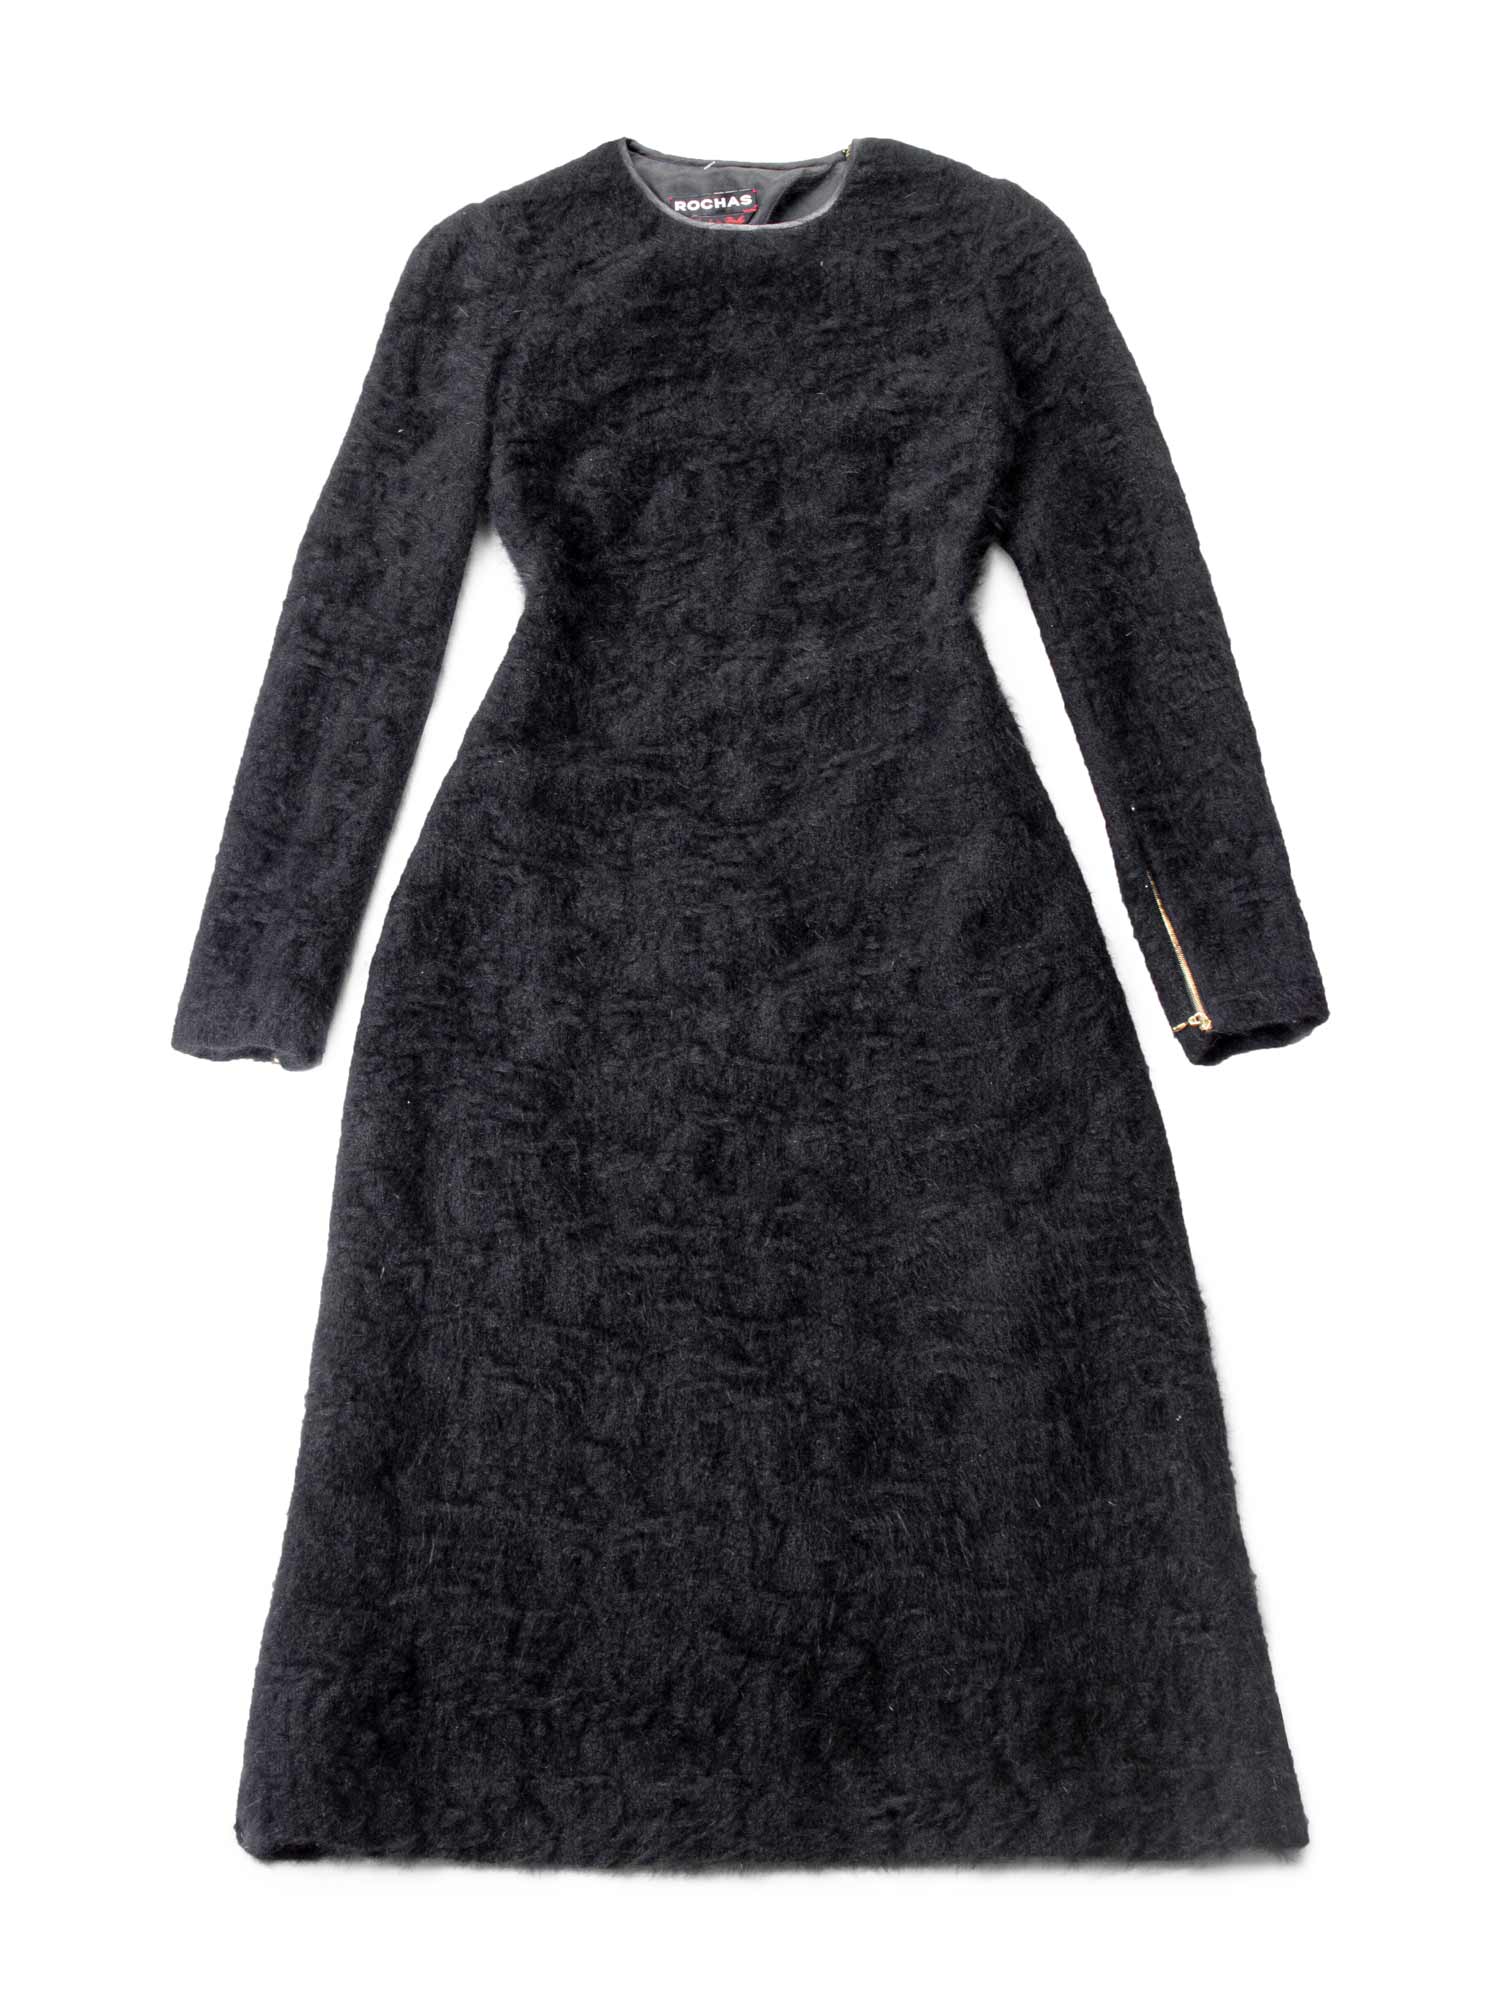 Rochas Angora Knitted Fitted Open Back Long Dress Black-designer resale